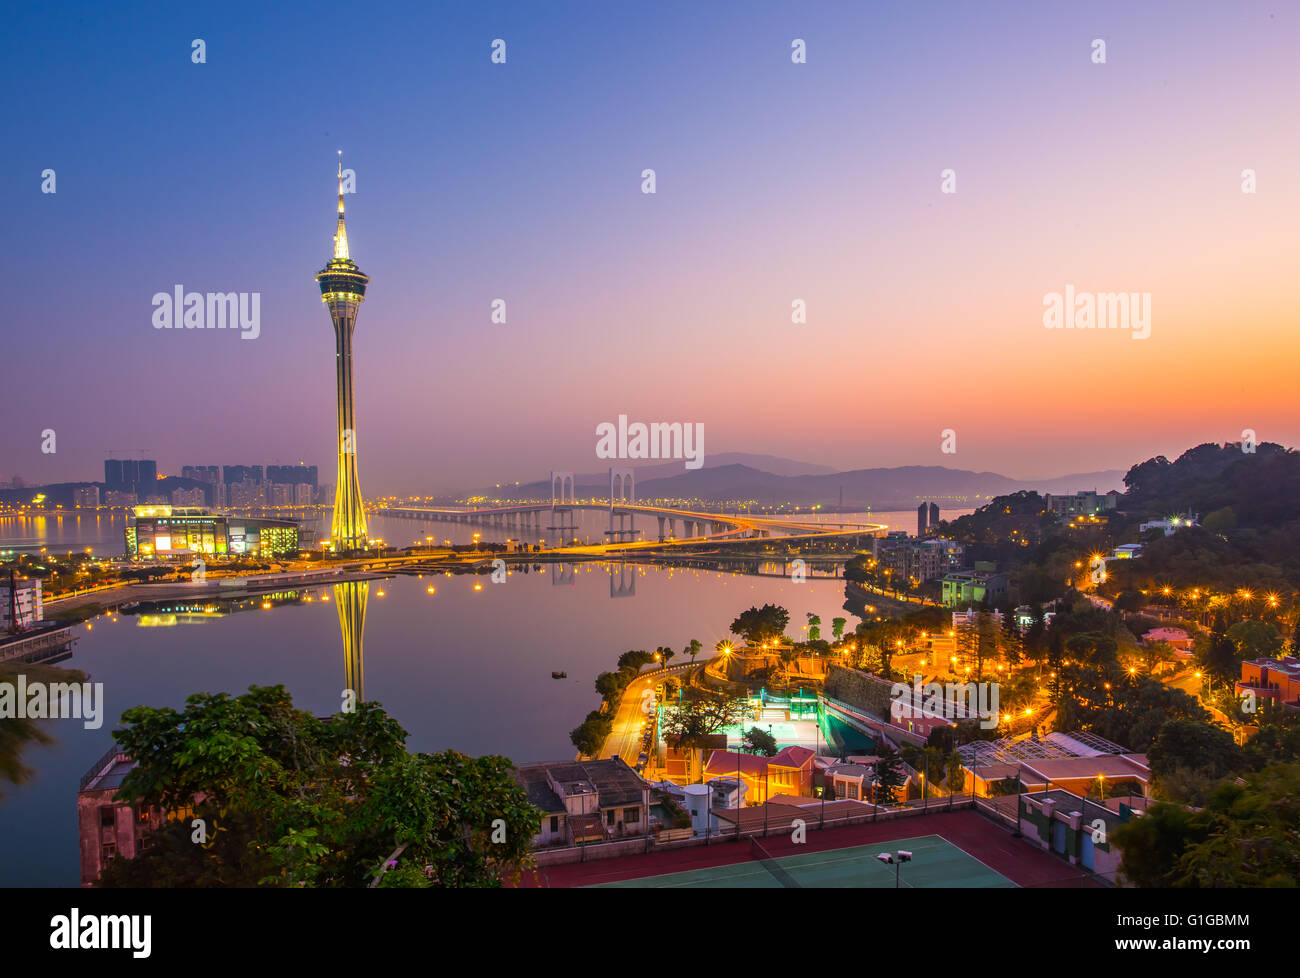 Vue du coucher de soleil sur la ville de Macao. Banque D'Images